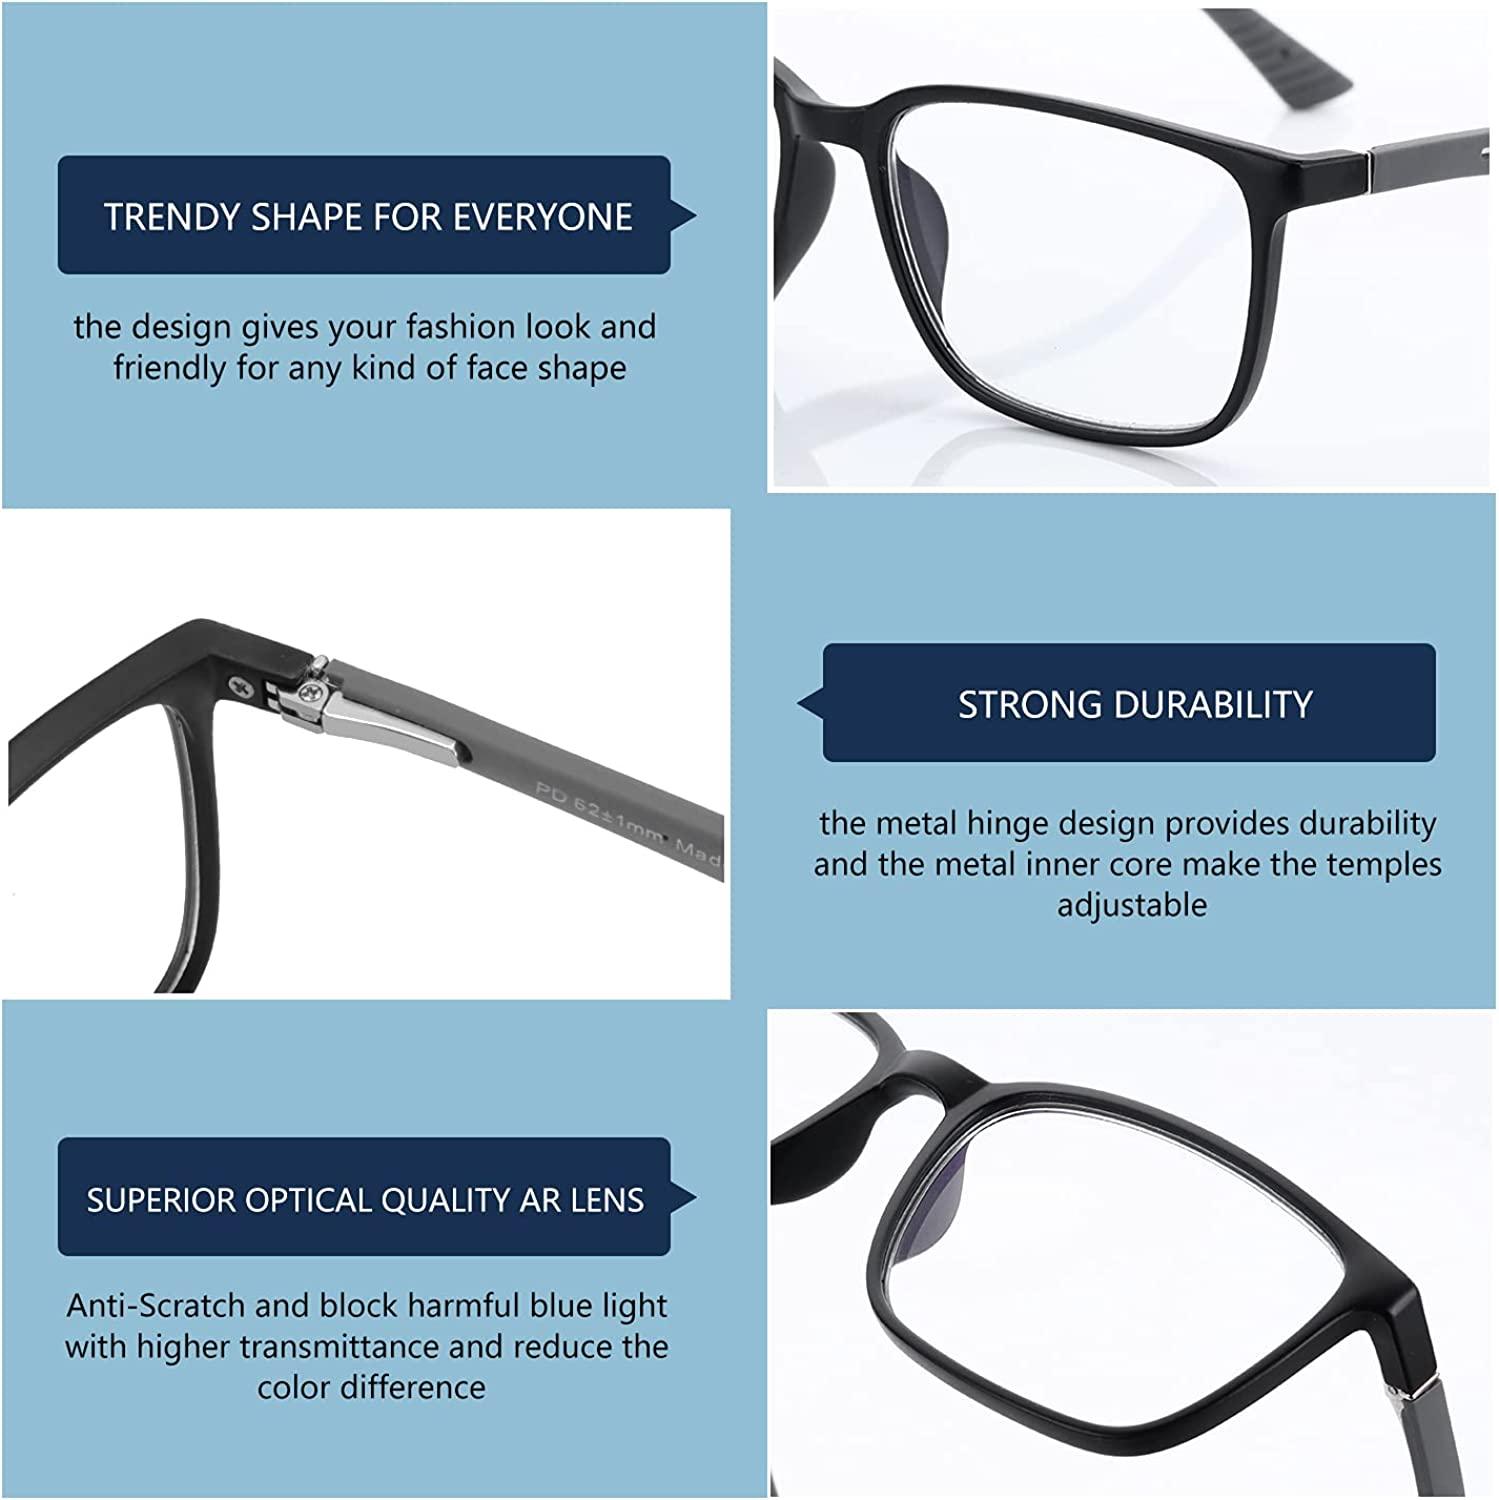  BLUEMOKY Blue Light Reading Glasses for Men，Sport Square Frame  Readers, Anti Glare Computer Glasses : BLUEMOKY: Health & Household